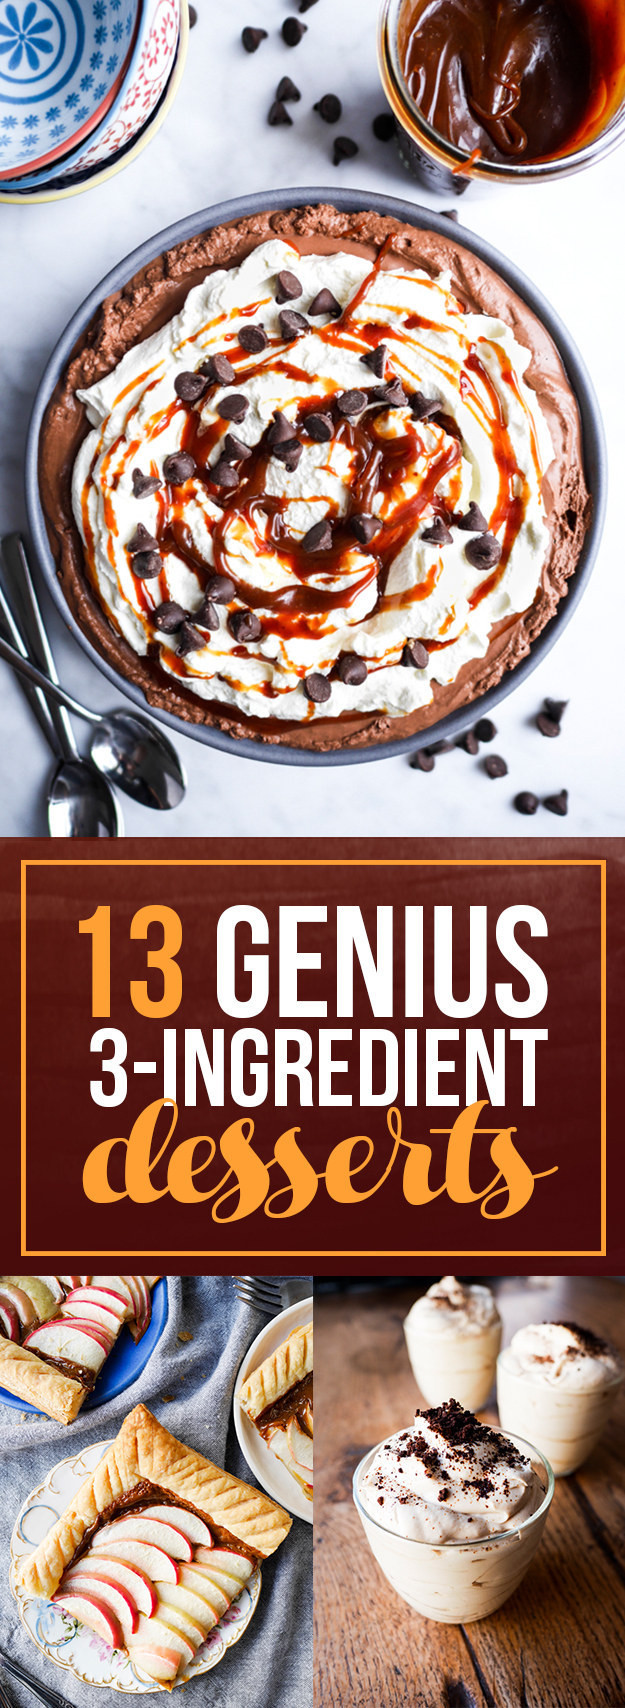 Three Ingredients Desserts
 13 Insanely Easy Three Ingre nt Desserts